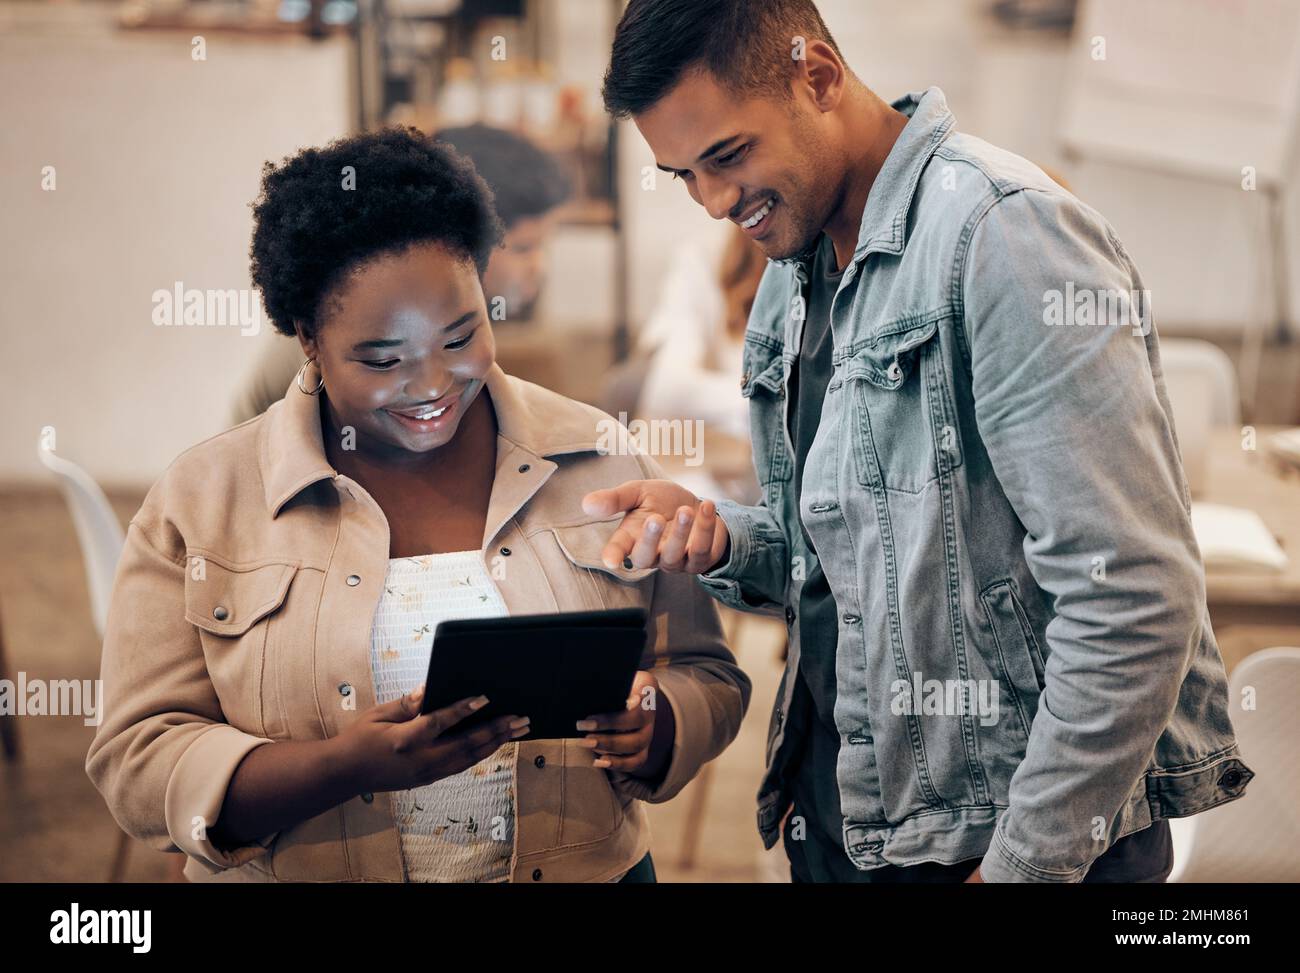 Entreprise, homme et femme noire avec tablette, médias sociaux et connexion pour le site Web, la conversation et le bureau moderne. Société, femme afro-américaine Banque D'Images